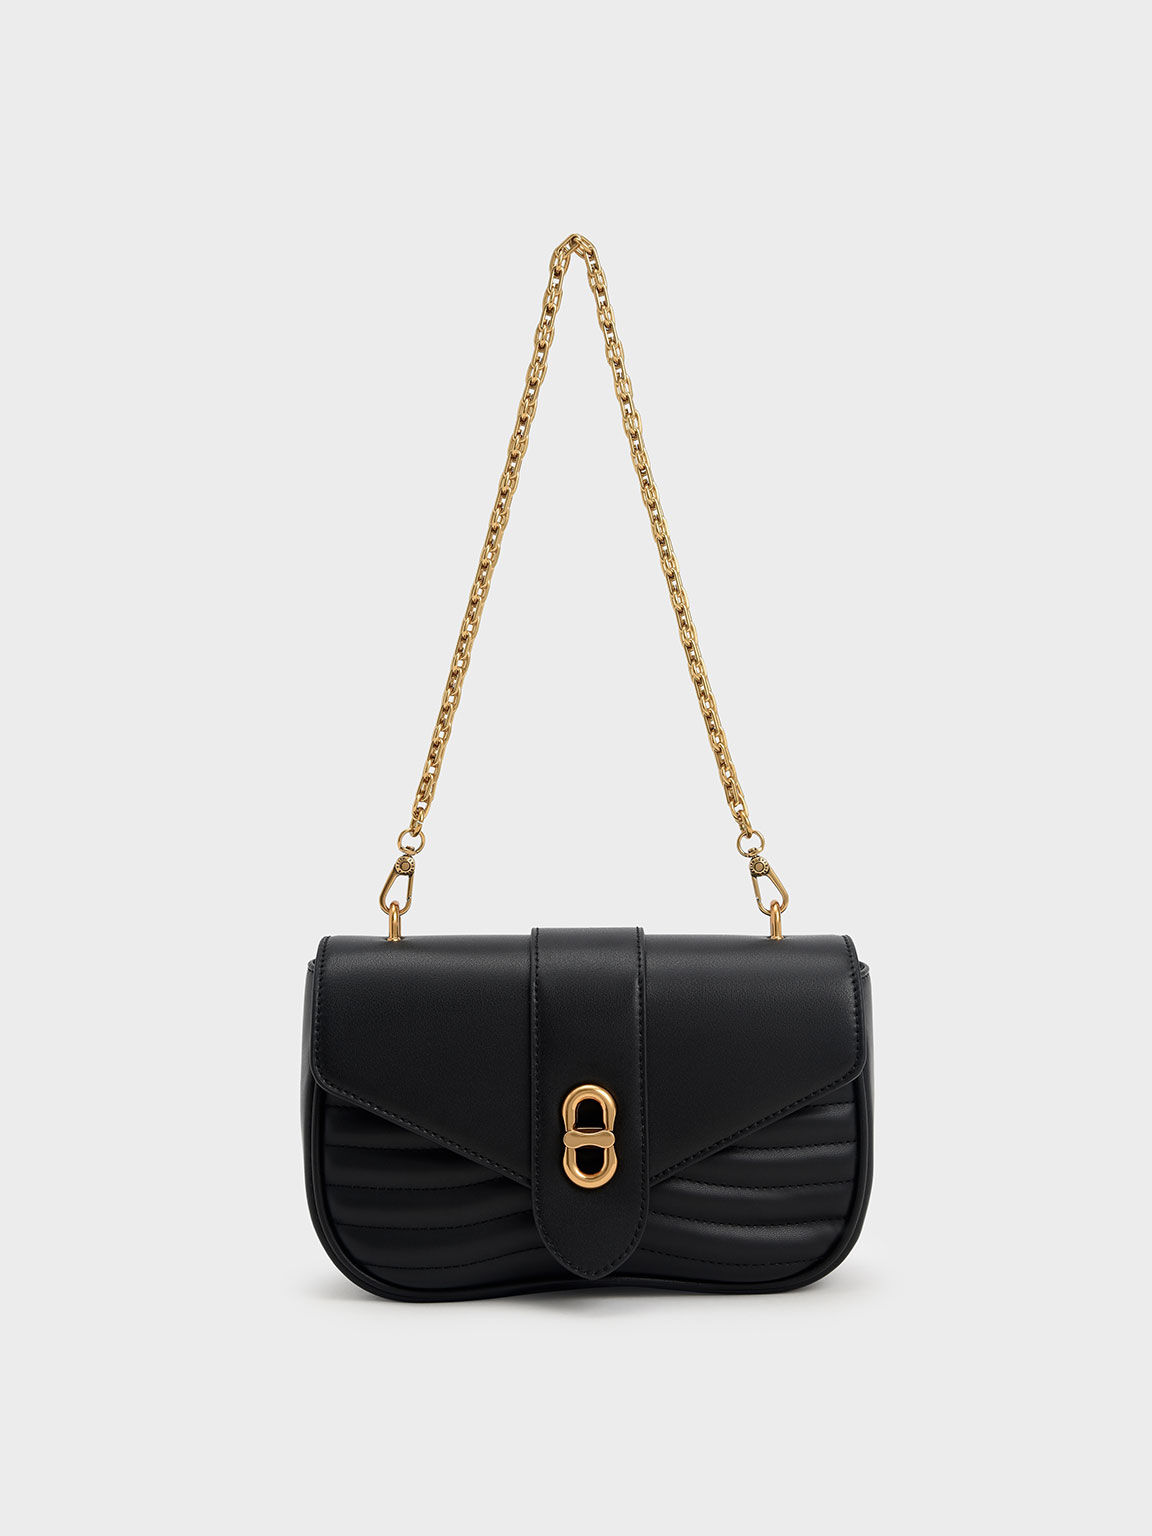 Yours Plus Size Black Detachable Chain Shoulder Bag Size One Size | Women's Plus Size and Curve Fashion